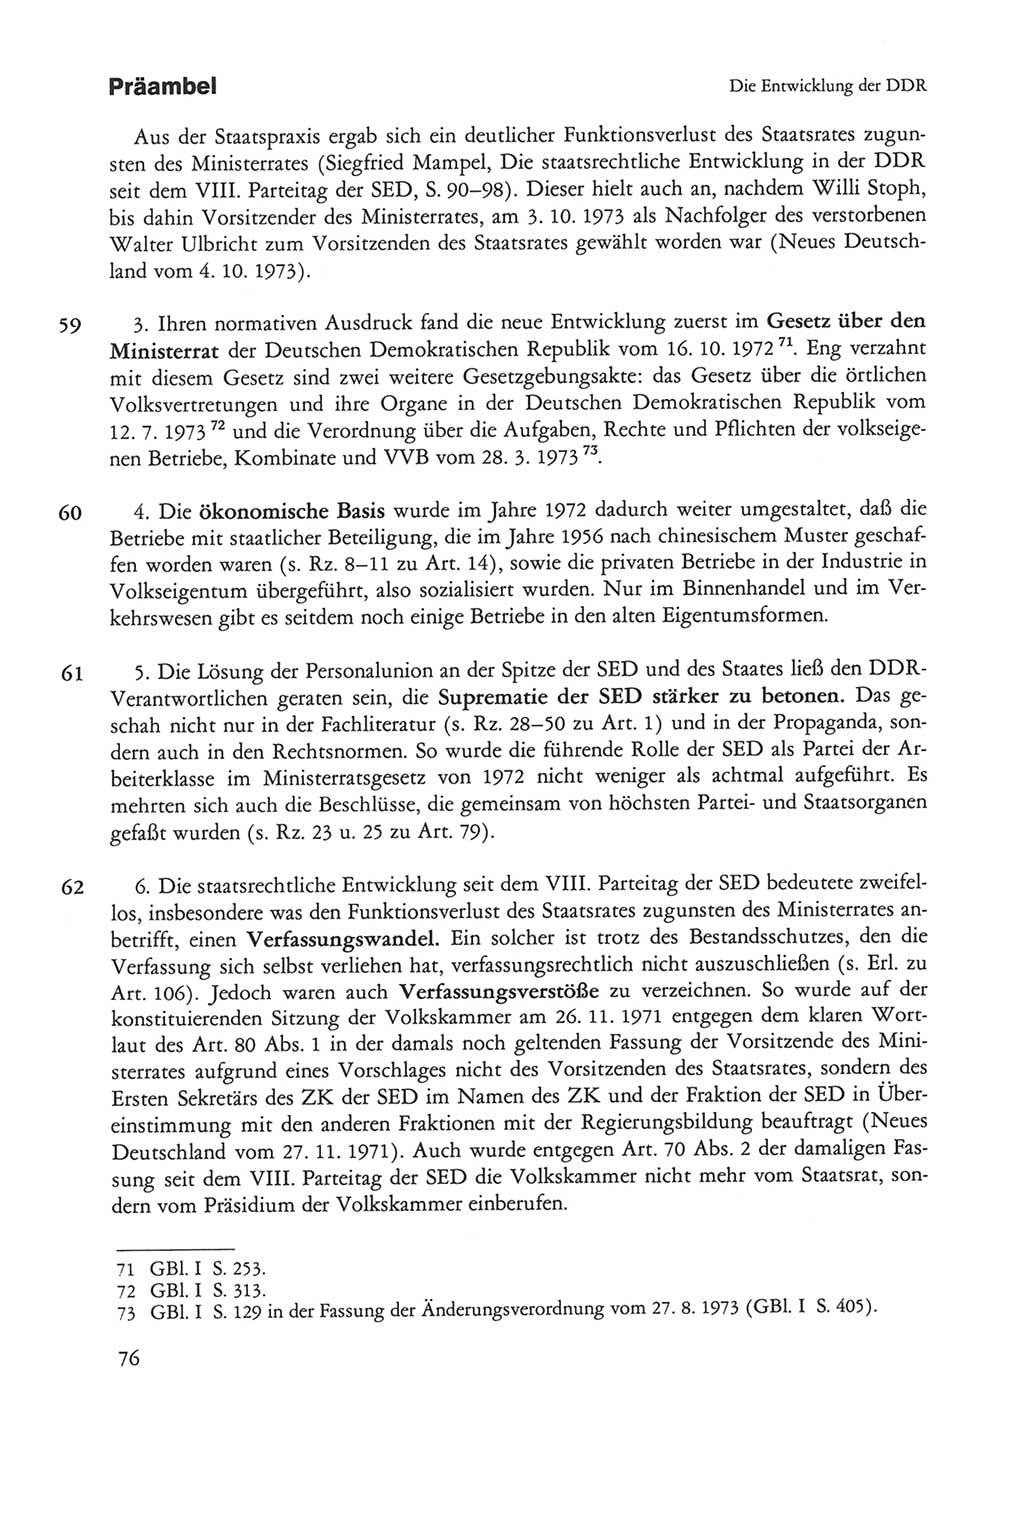 Die sozialistische Verfassung der Deutschen Demokratischen Republik (DDR), Kommentar mit einem Nachtrag 1997, Seite 76 (Soz. Verf. DDR Komm. Nachtr. 1997, S. 76)